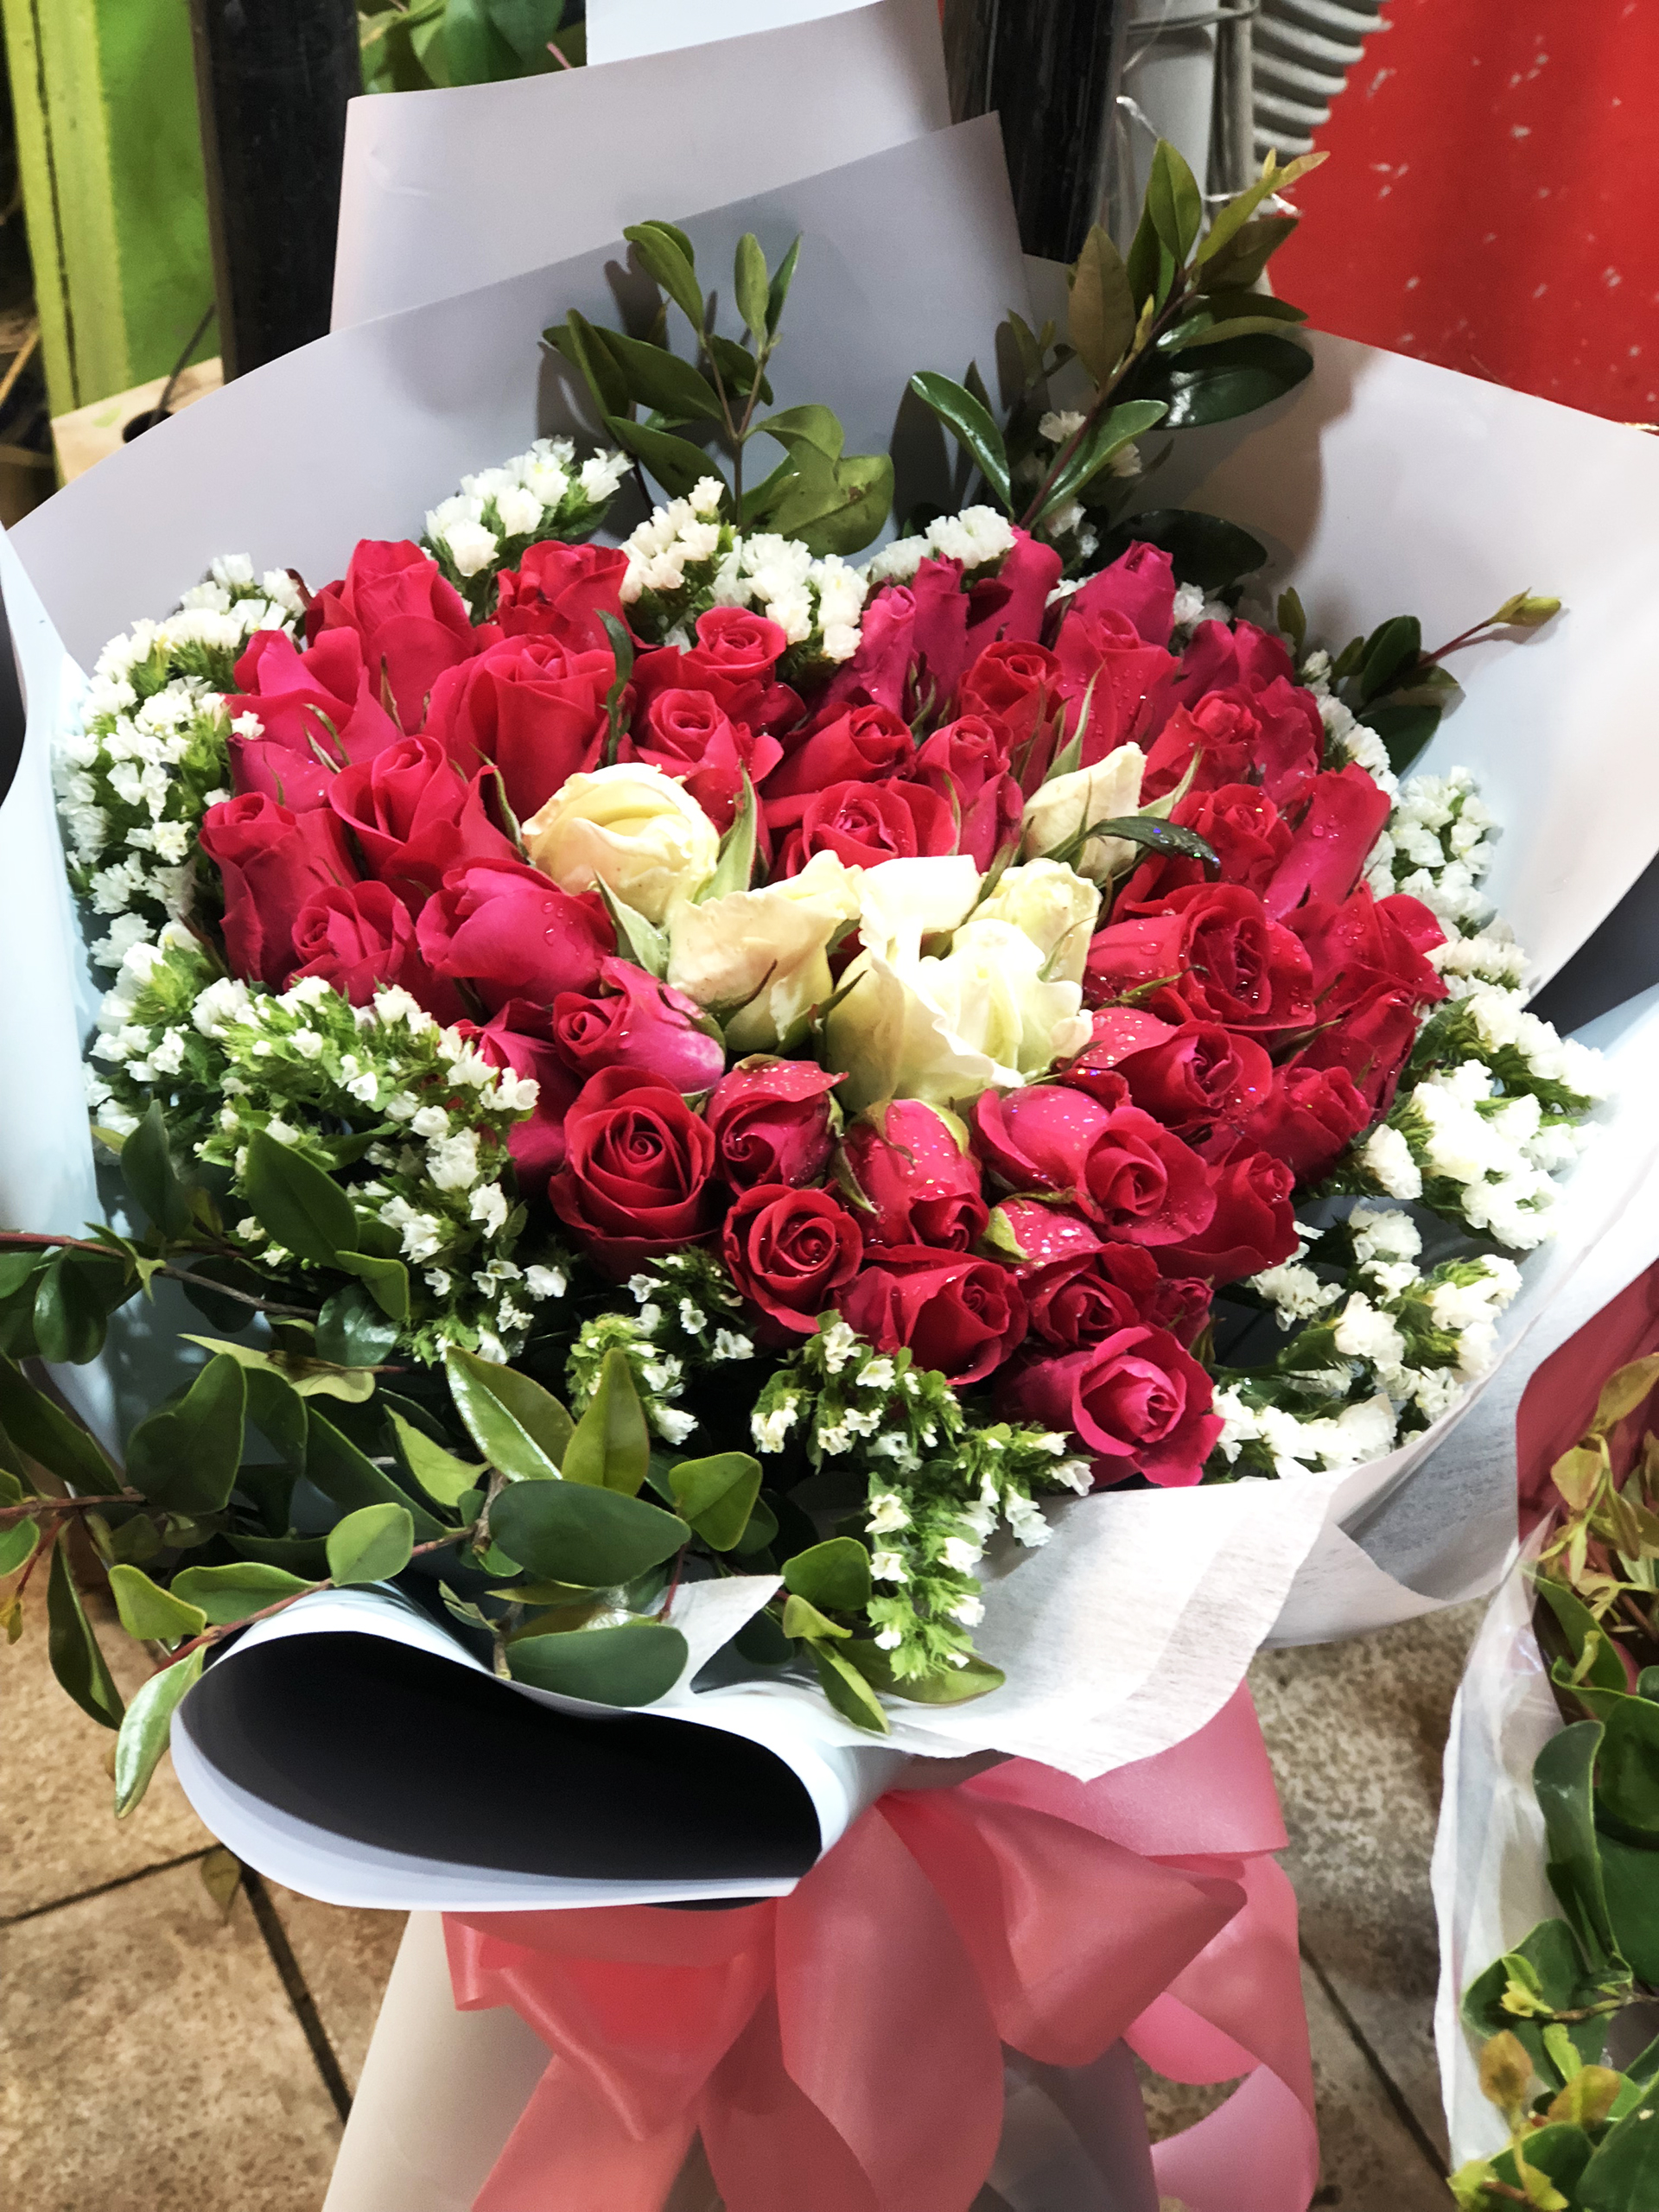 Valentine đã đến và đây là cơ hội tuyệt vời để bạn tặng cho nàng một bó hoa thật xinh đẹp. Hình ảnh những đóa hoa tươi tắn cùng cách bố trí tinh tế sẽ khiến bạn hoàn toàn bị chinh phục. Còn chần chờ gì nữa, hãy tham gia và tìm kiếm bó hoa hoàn hảo cho người mà bạn yêu thương.